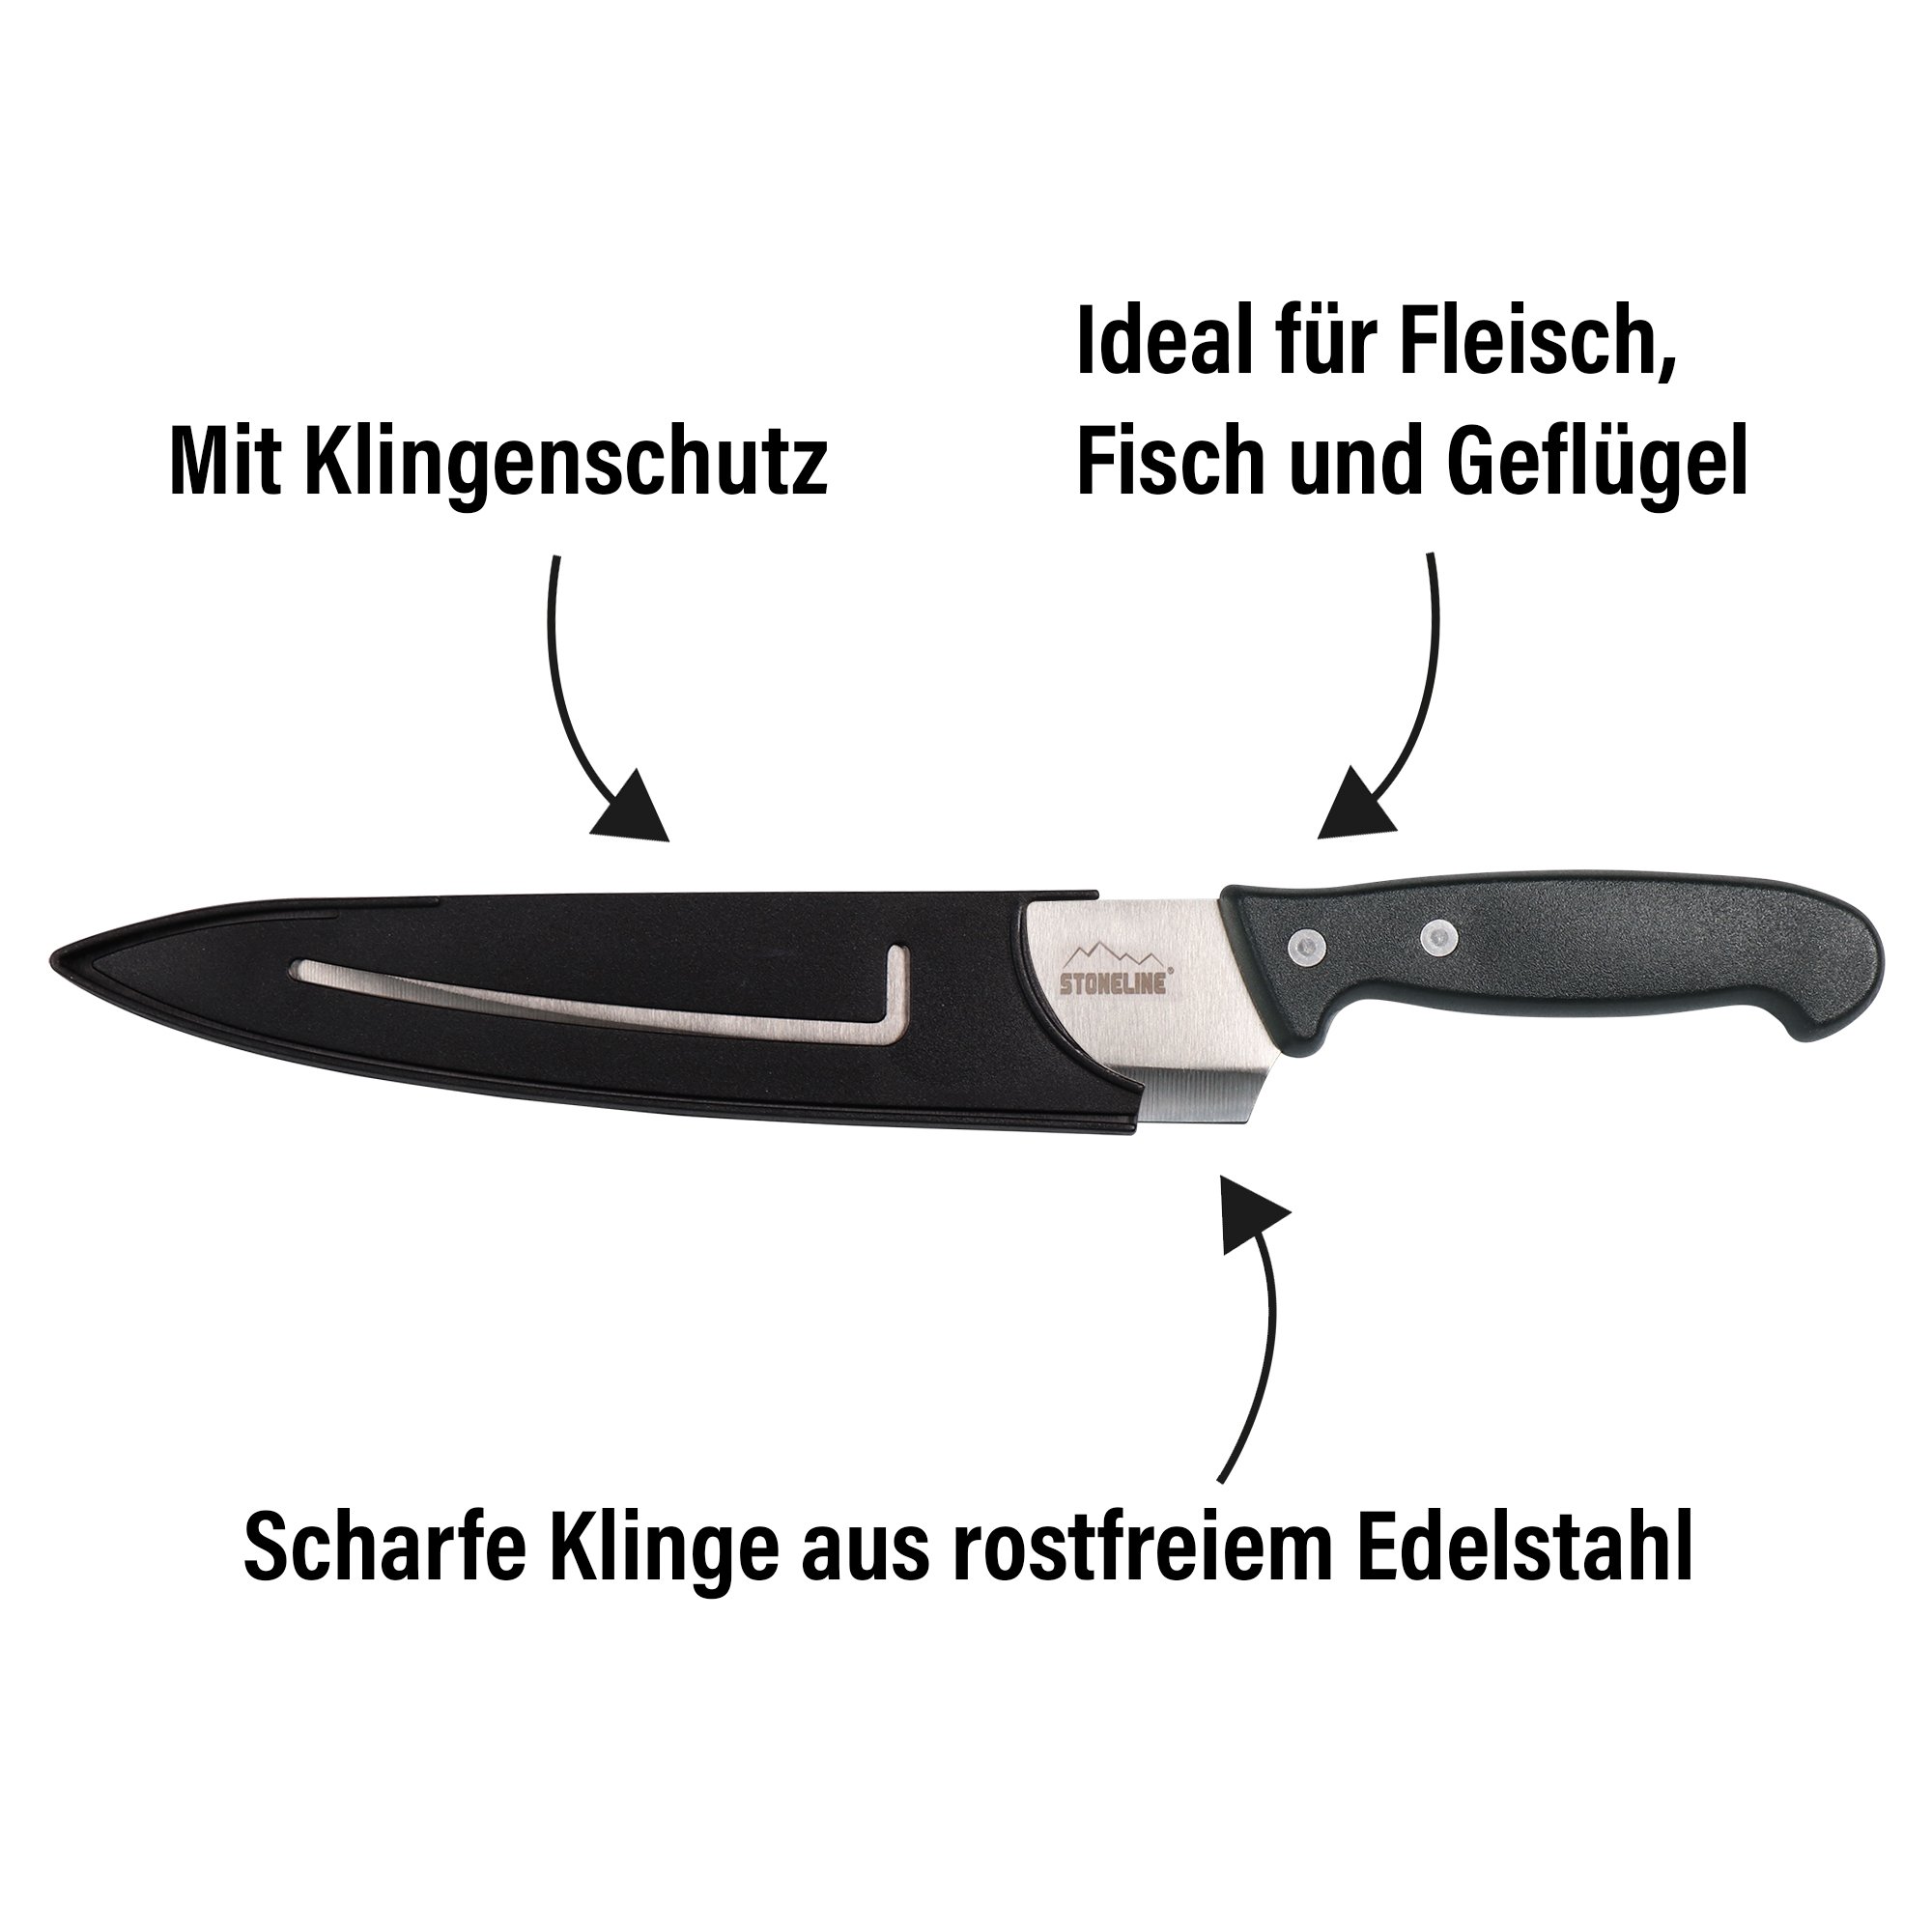 STONELINE® couteau de chef 31,5 cm, avec protège-lame